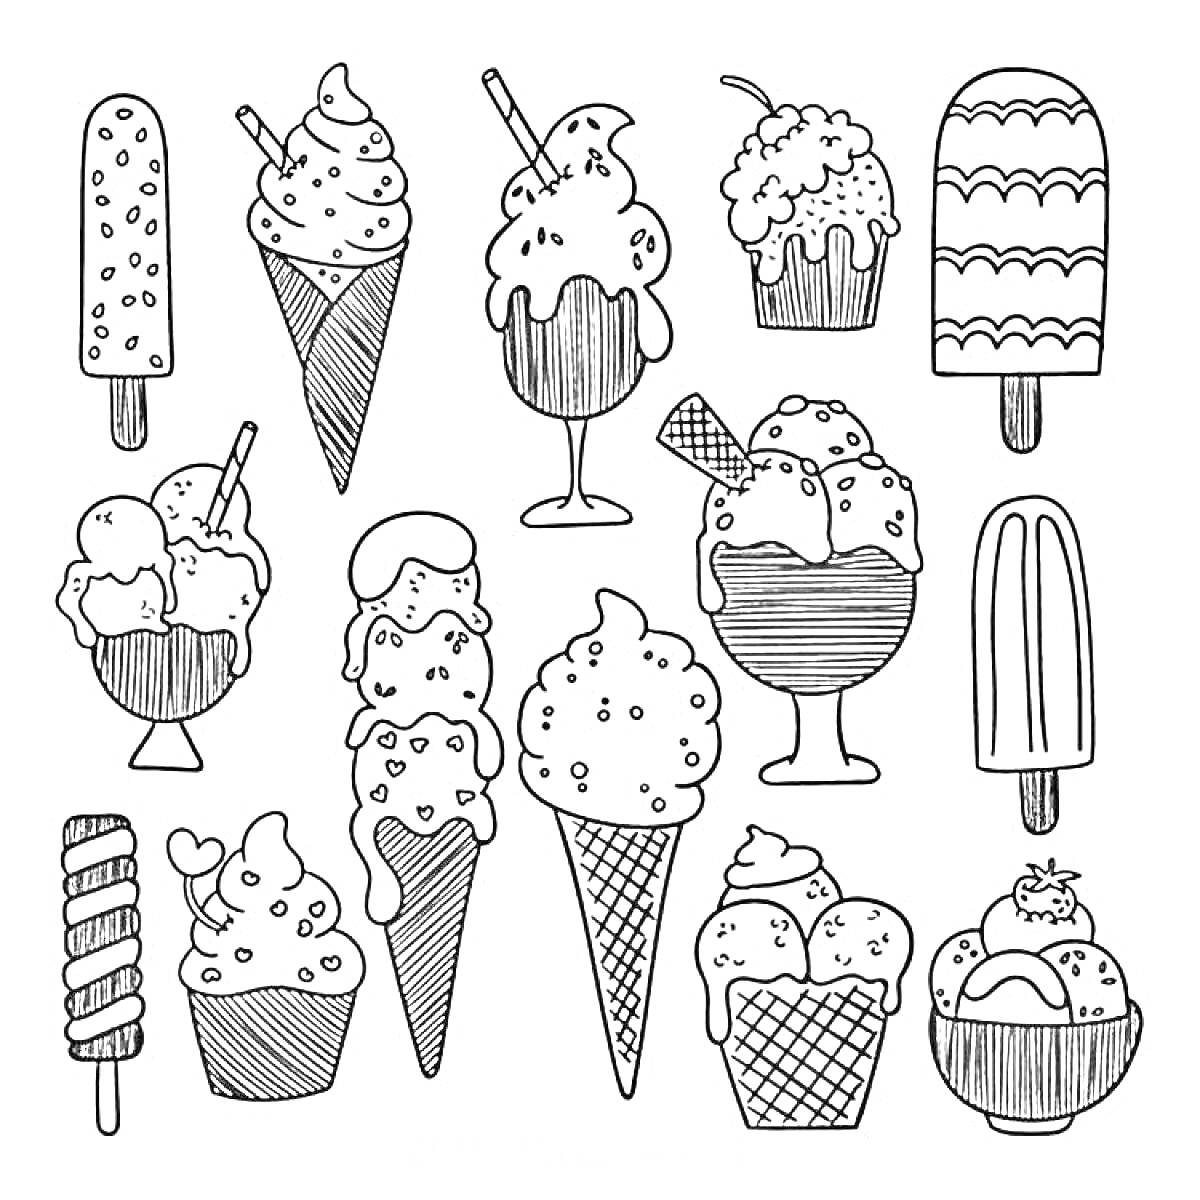 Раскраска Набор стикеров с различными видами мороженого (эскимо, рожок, фруктовый лед, мороженое в стакане, мороженое с вафлей)